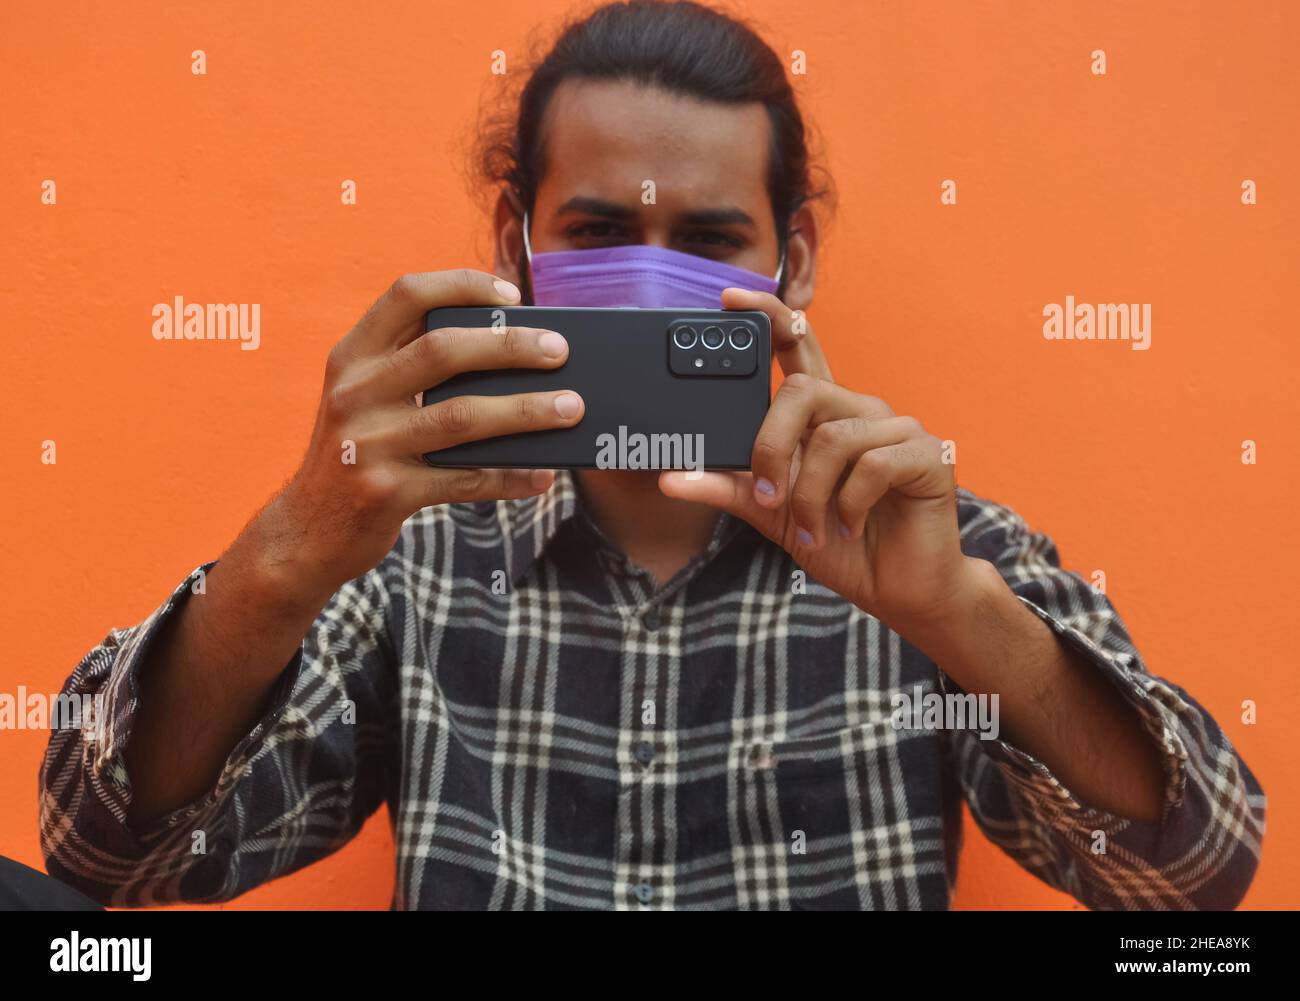 Selektiver Fokus eines jungen Mannes, der eine Gesichtsmaske trägt und Sie mit seinem Mobiltelefon fotografiert, sich gegen eine orangefarbene Wand mit Kopierraum posiert Stockfoto